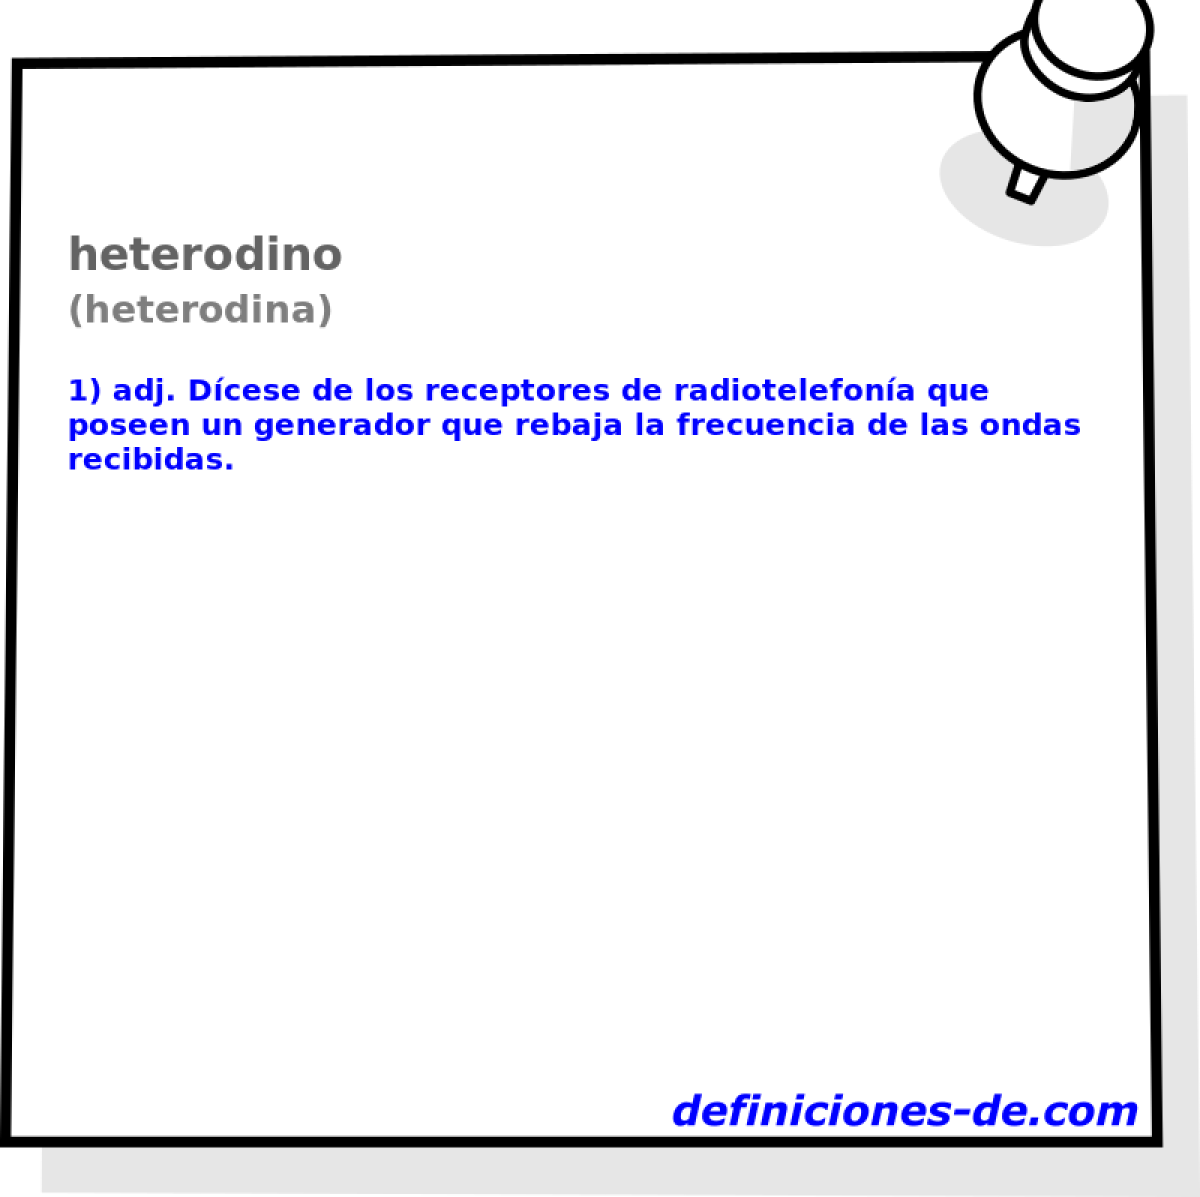 heterodino (heterodina)